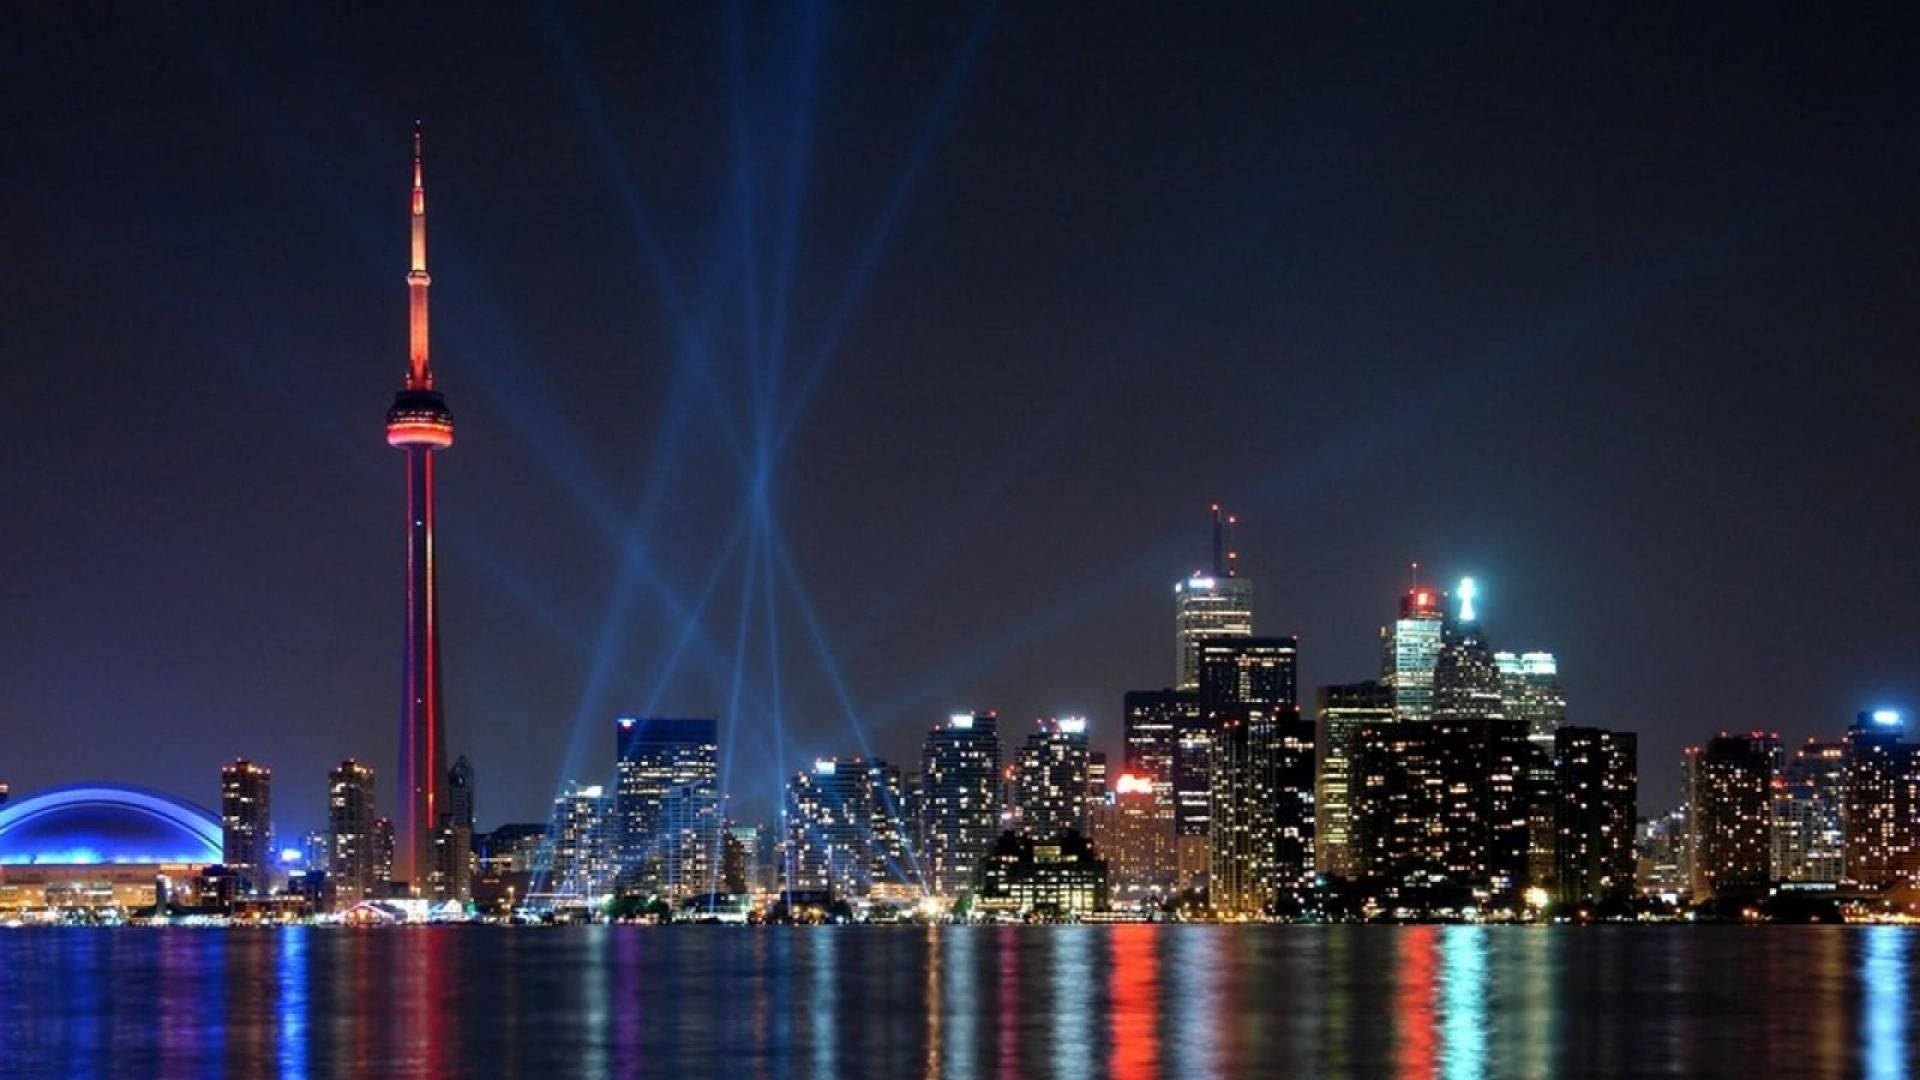 Toronto Skyline At Night